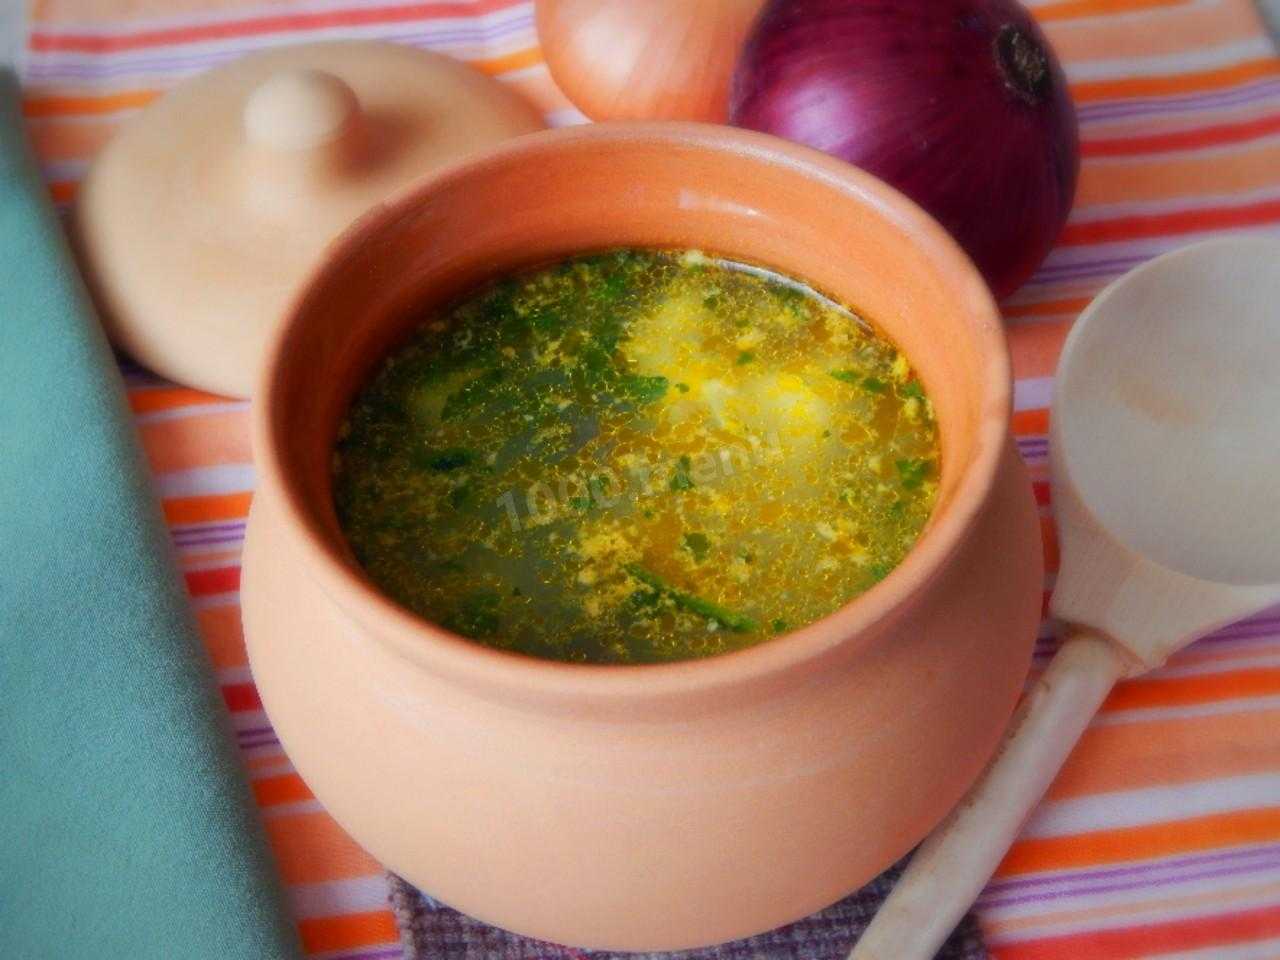 Суп из опят свежих – чарующий аромат леса прямо на кухне: рецепт с фото и видео